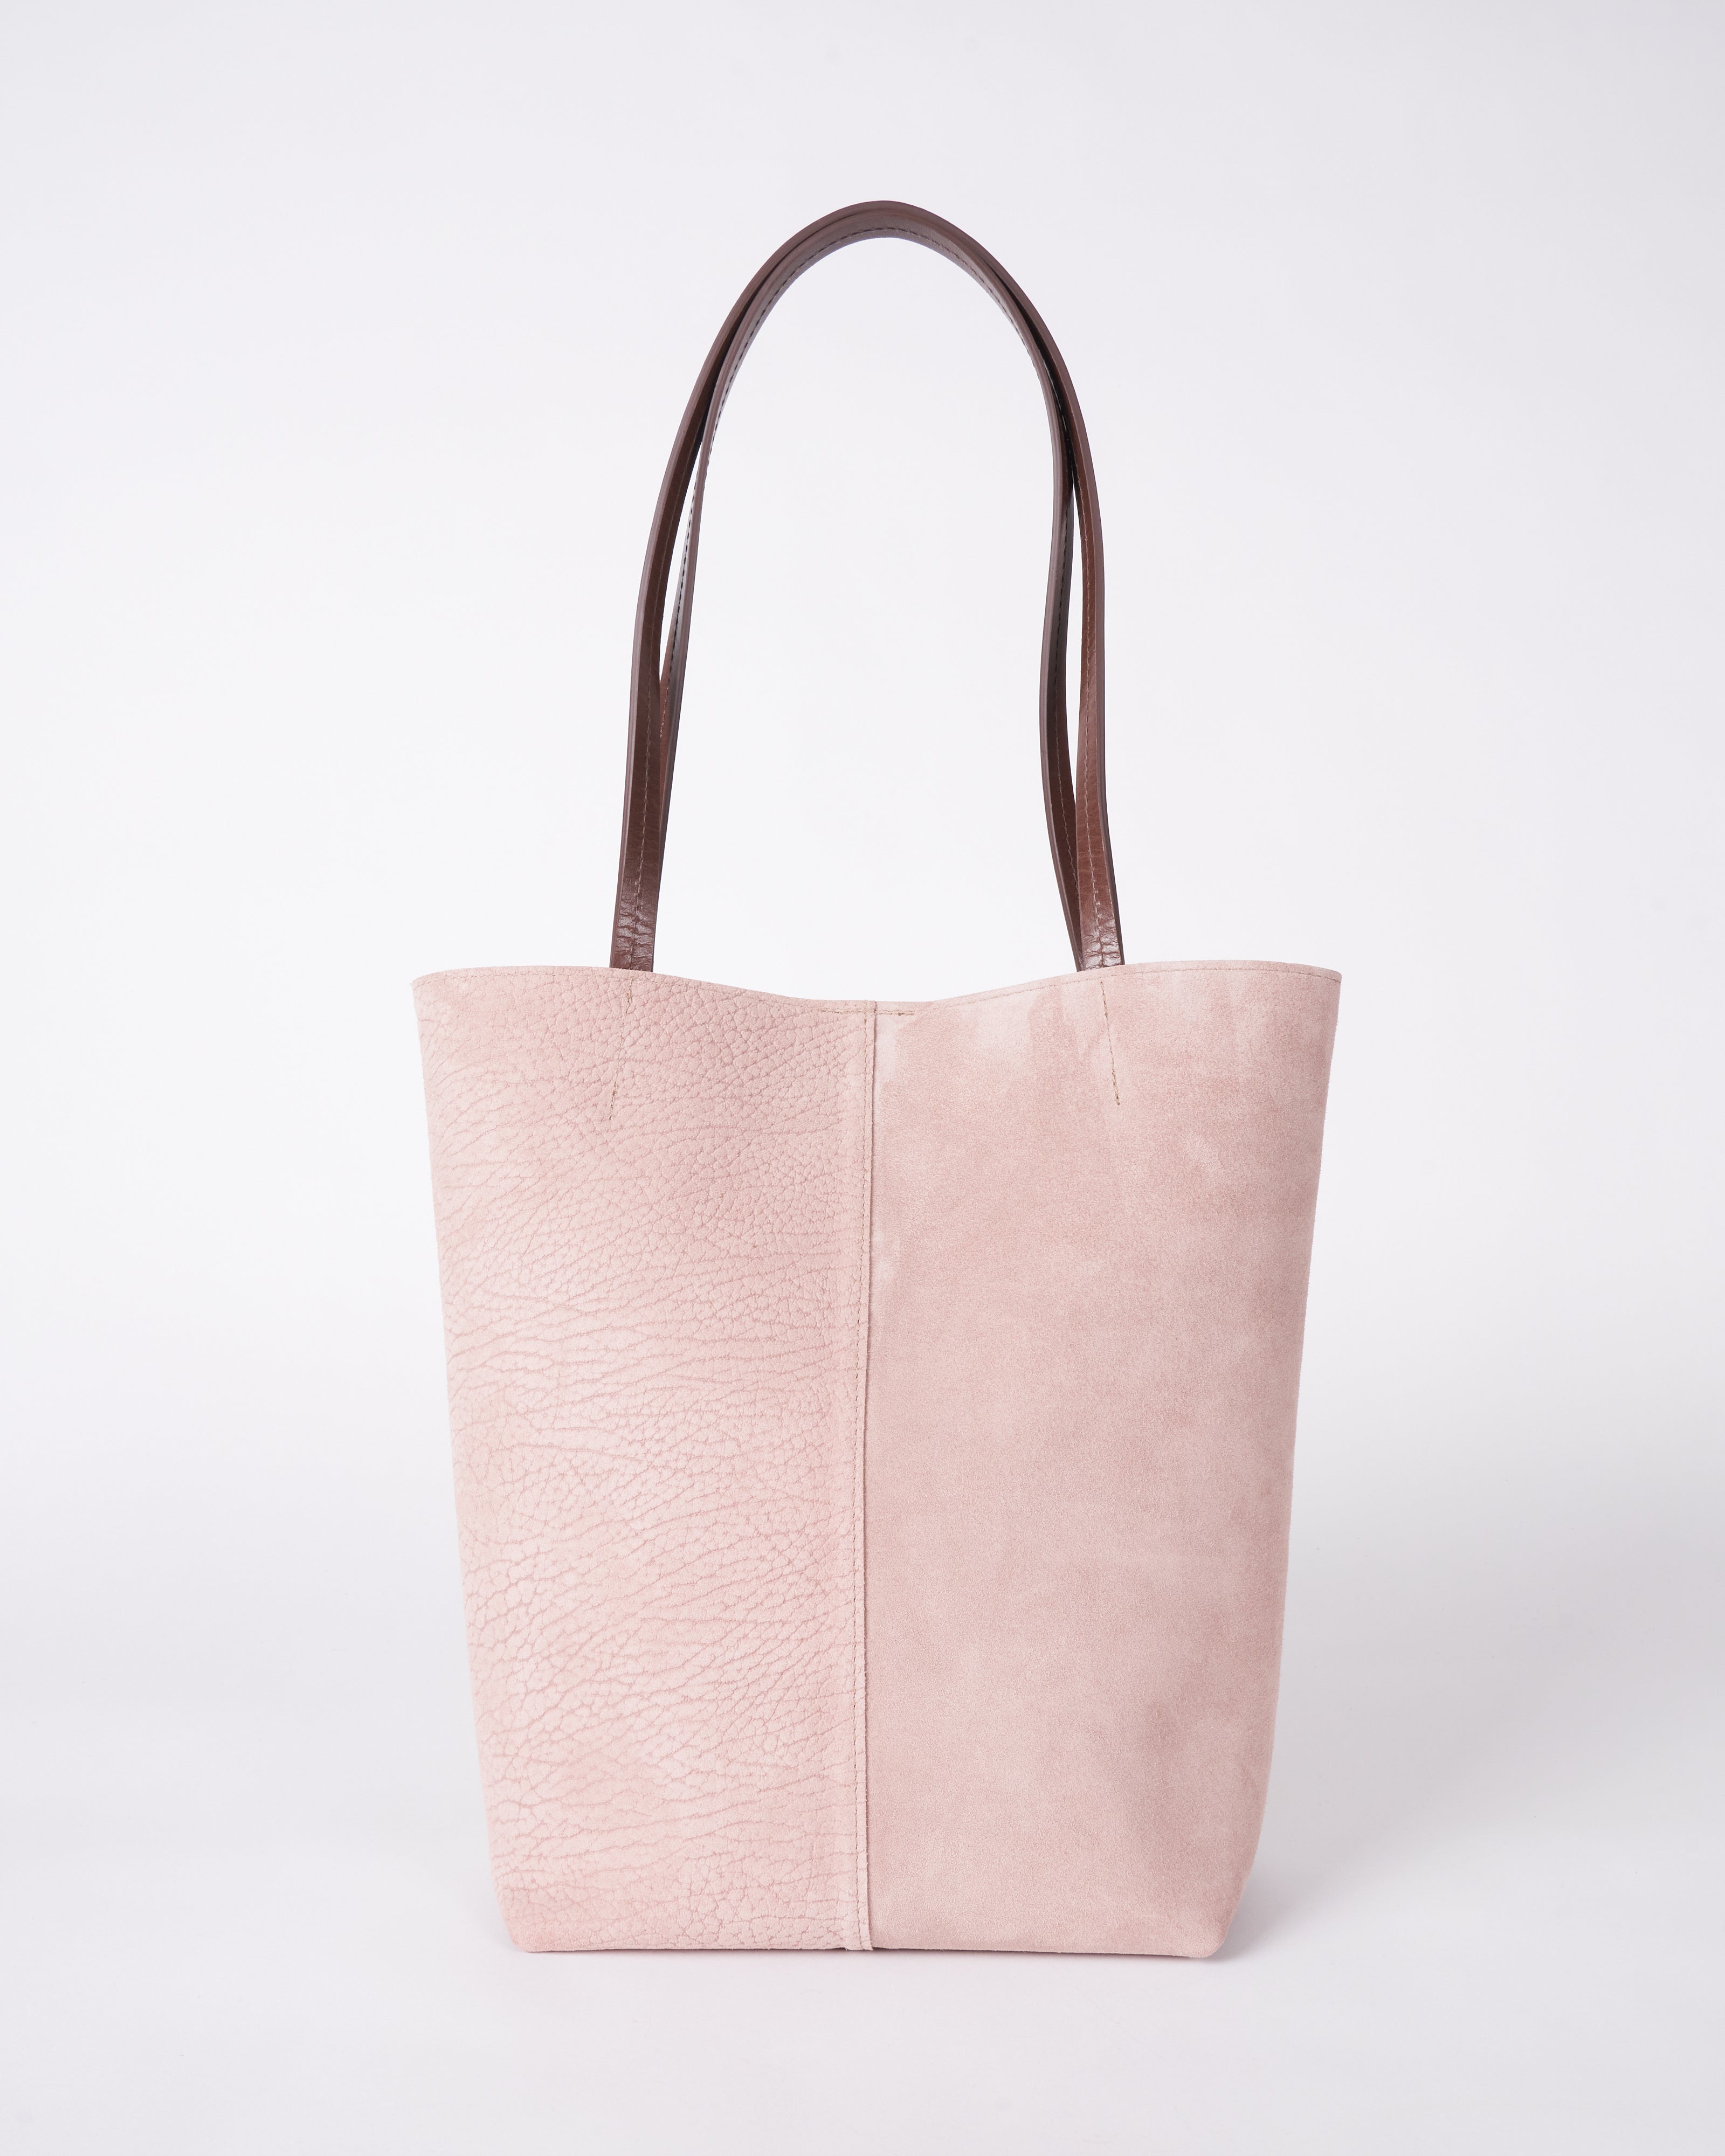 Leather Tote, Suede Bag, Shoulder Bag, Blush Pink Leather Bag